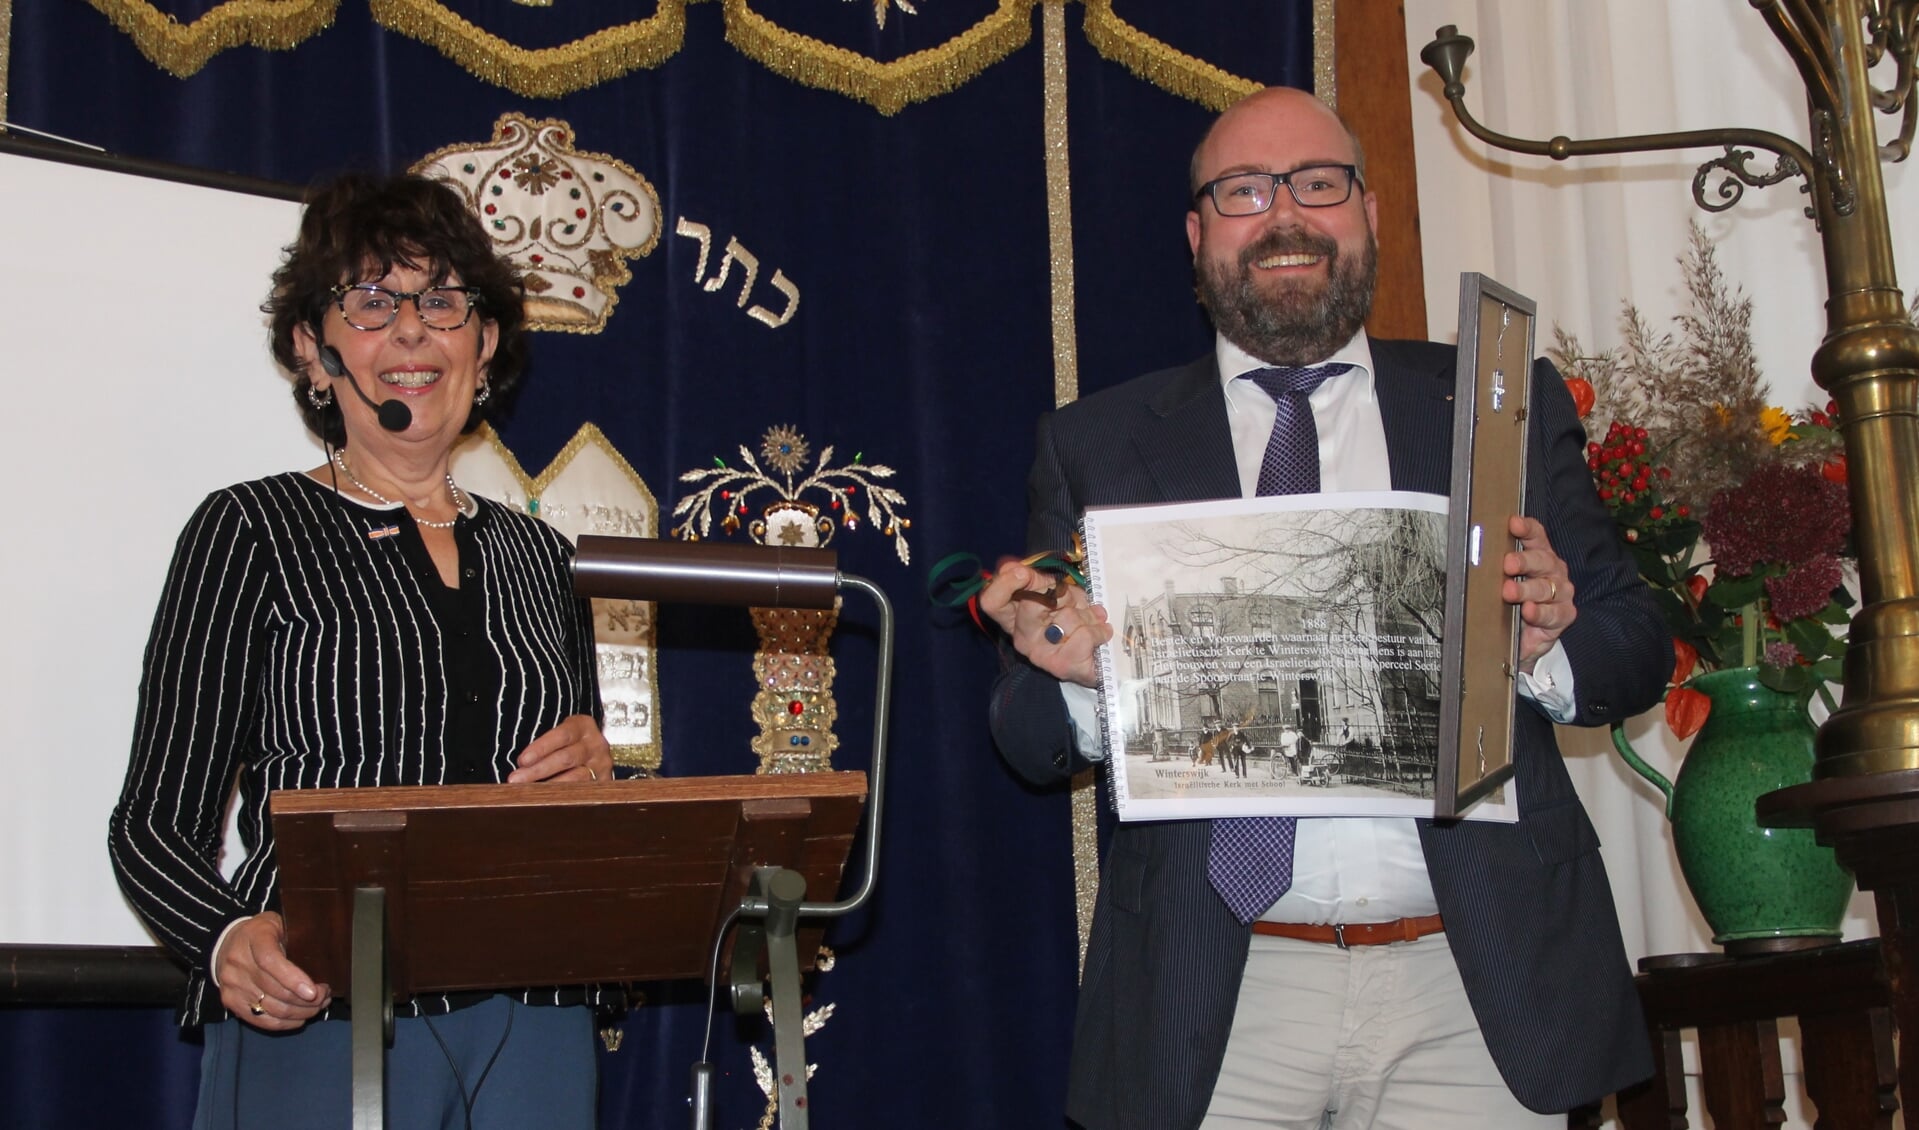 Mirjam Schwarz (l) heeft de synagoge zondag 10 oktober officieel overgedragen aan de Anne Joldersma, die van Schwarz de originele bouwtekening en het bestek uit 1888 overhandigd kreeg.  Foto Lineke Voltman

